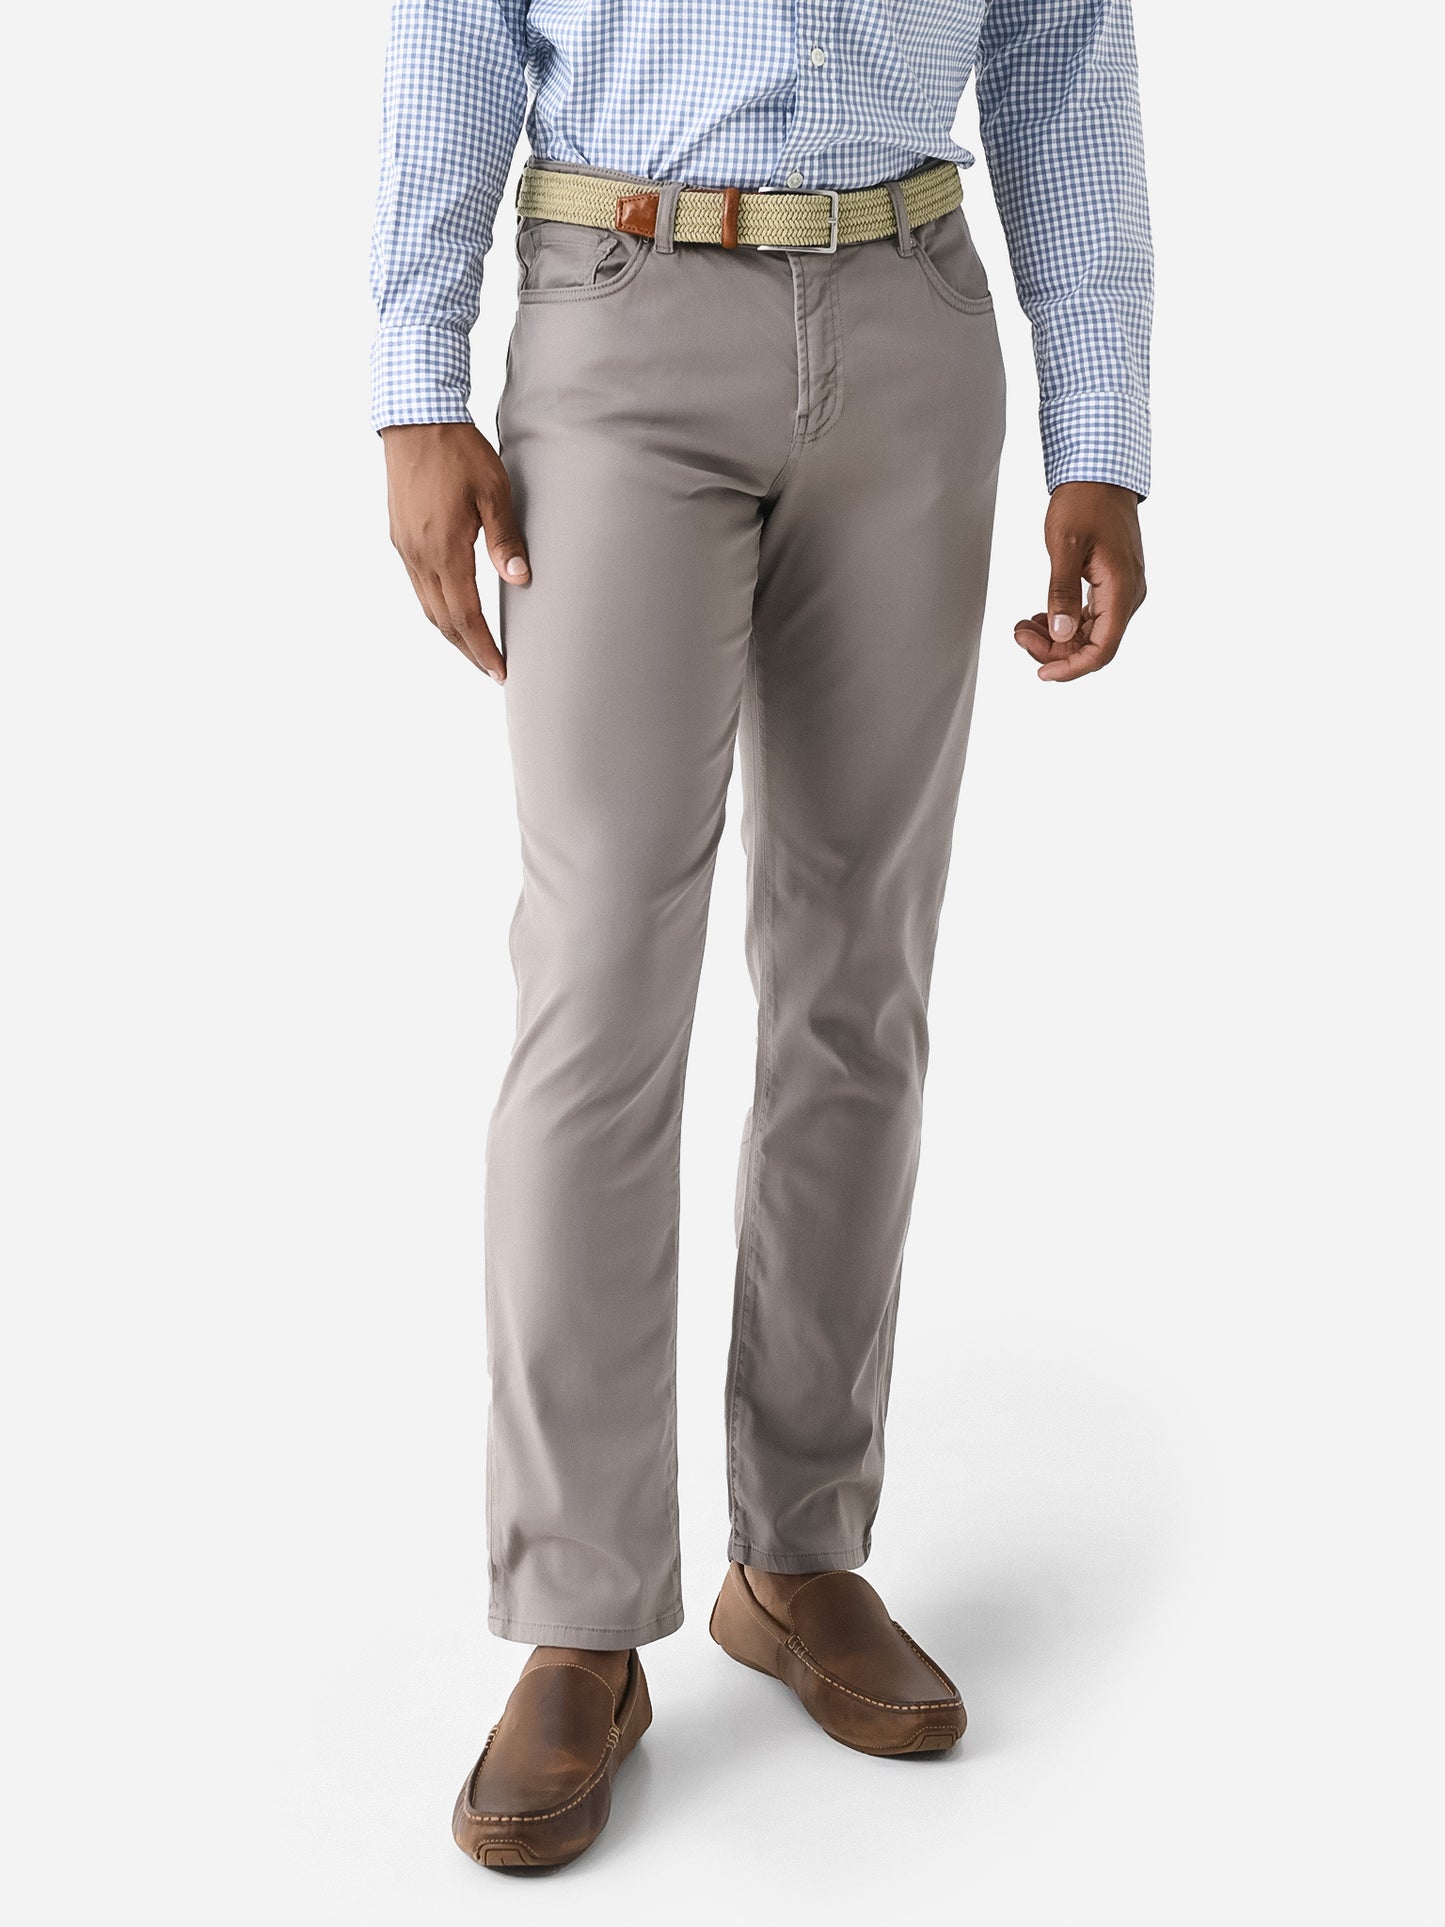 R51 Men's Silo Comfort Cotton 5-Pocket Pant